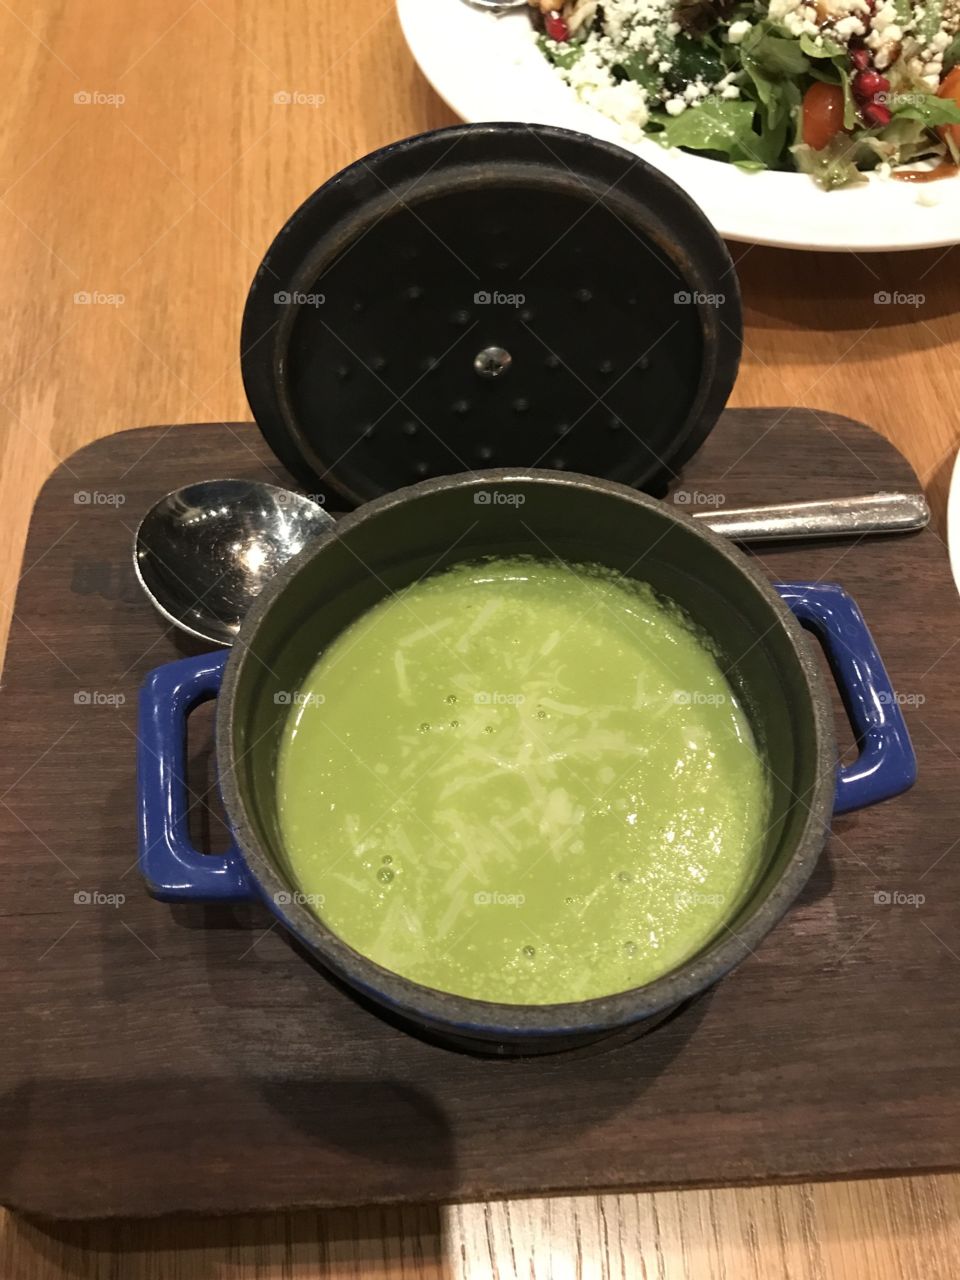 I love asparagus soup 🍜